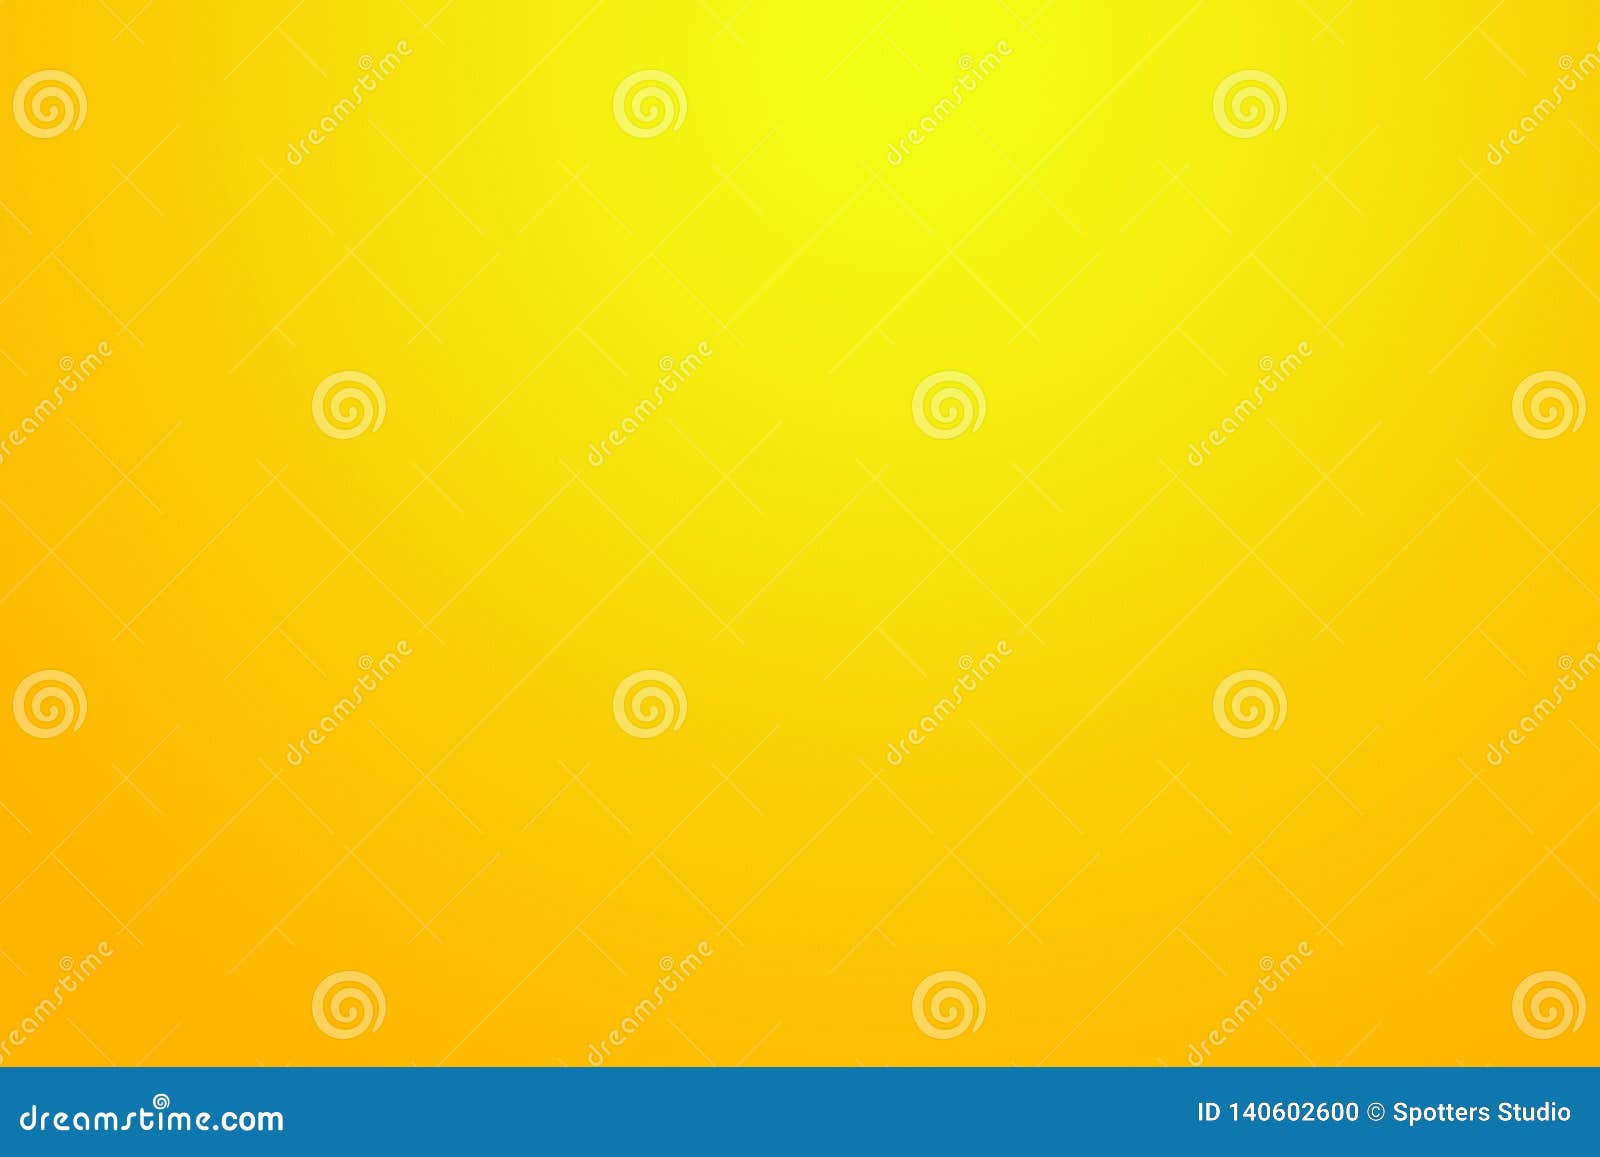 Download 44 Koleksi Background Warna Kuning Gratis Terbaik